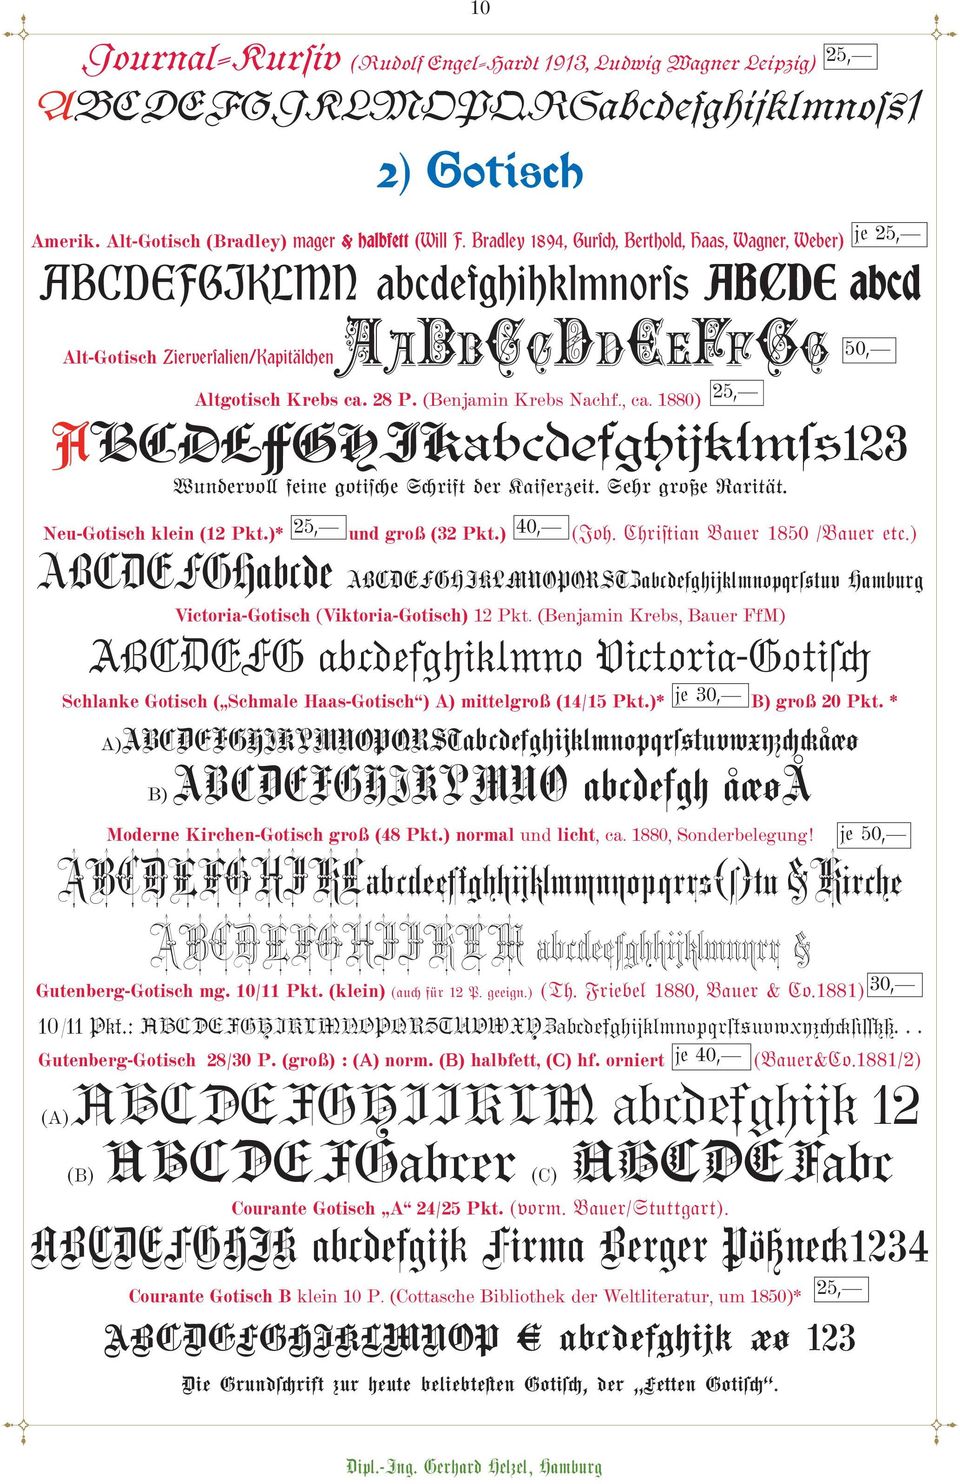 (Benjamin Krebs Nachf., ca. 1880) ABCDEFGHIKabçdefghijklms+123 Wundervoll feine gotische Schrift der Kaiserzeit. Sehr große Rarität. Neu-Gotisch klein (12 Pkt.)* und groß (32 Pkt.) (Joh.